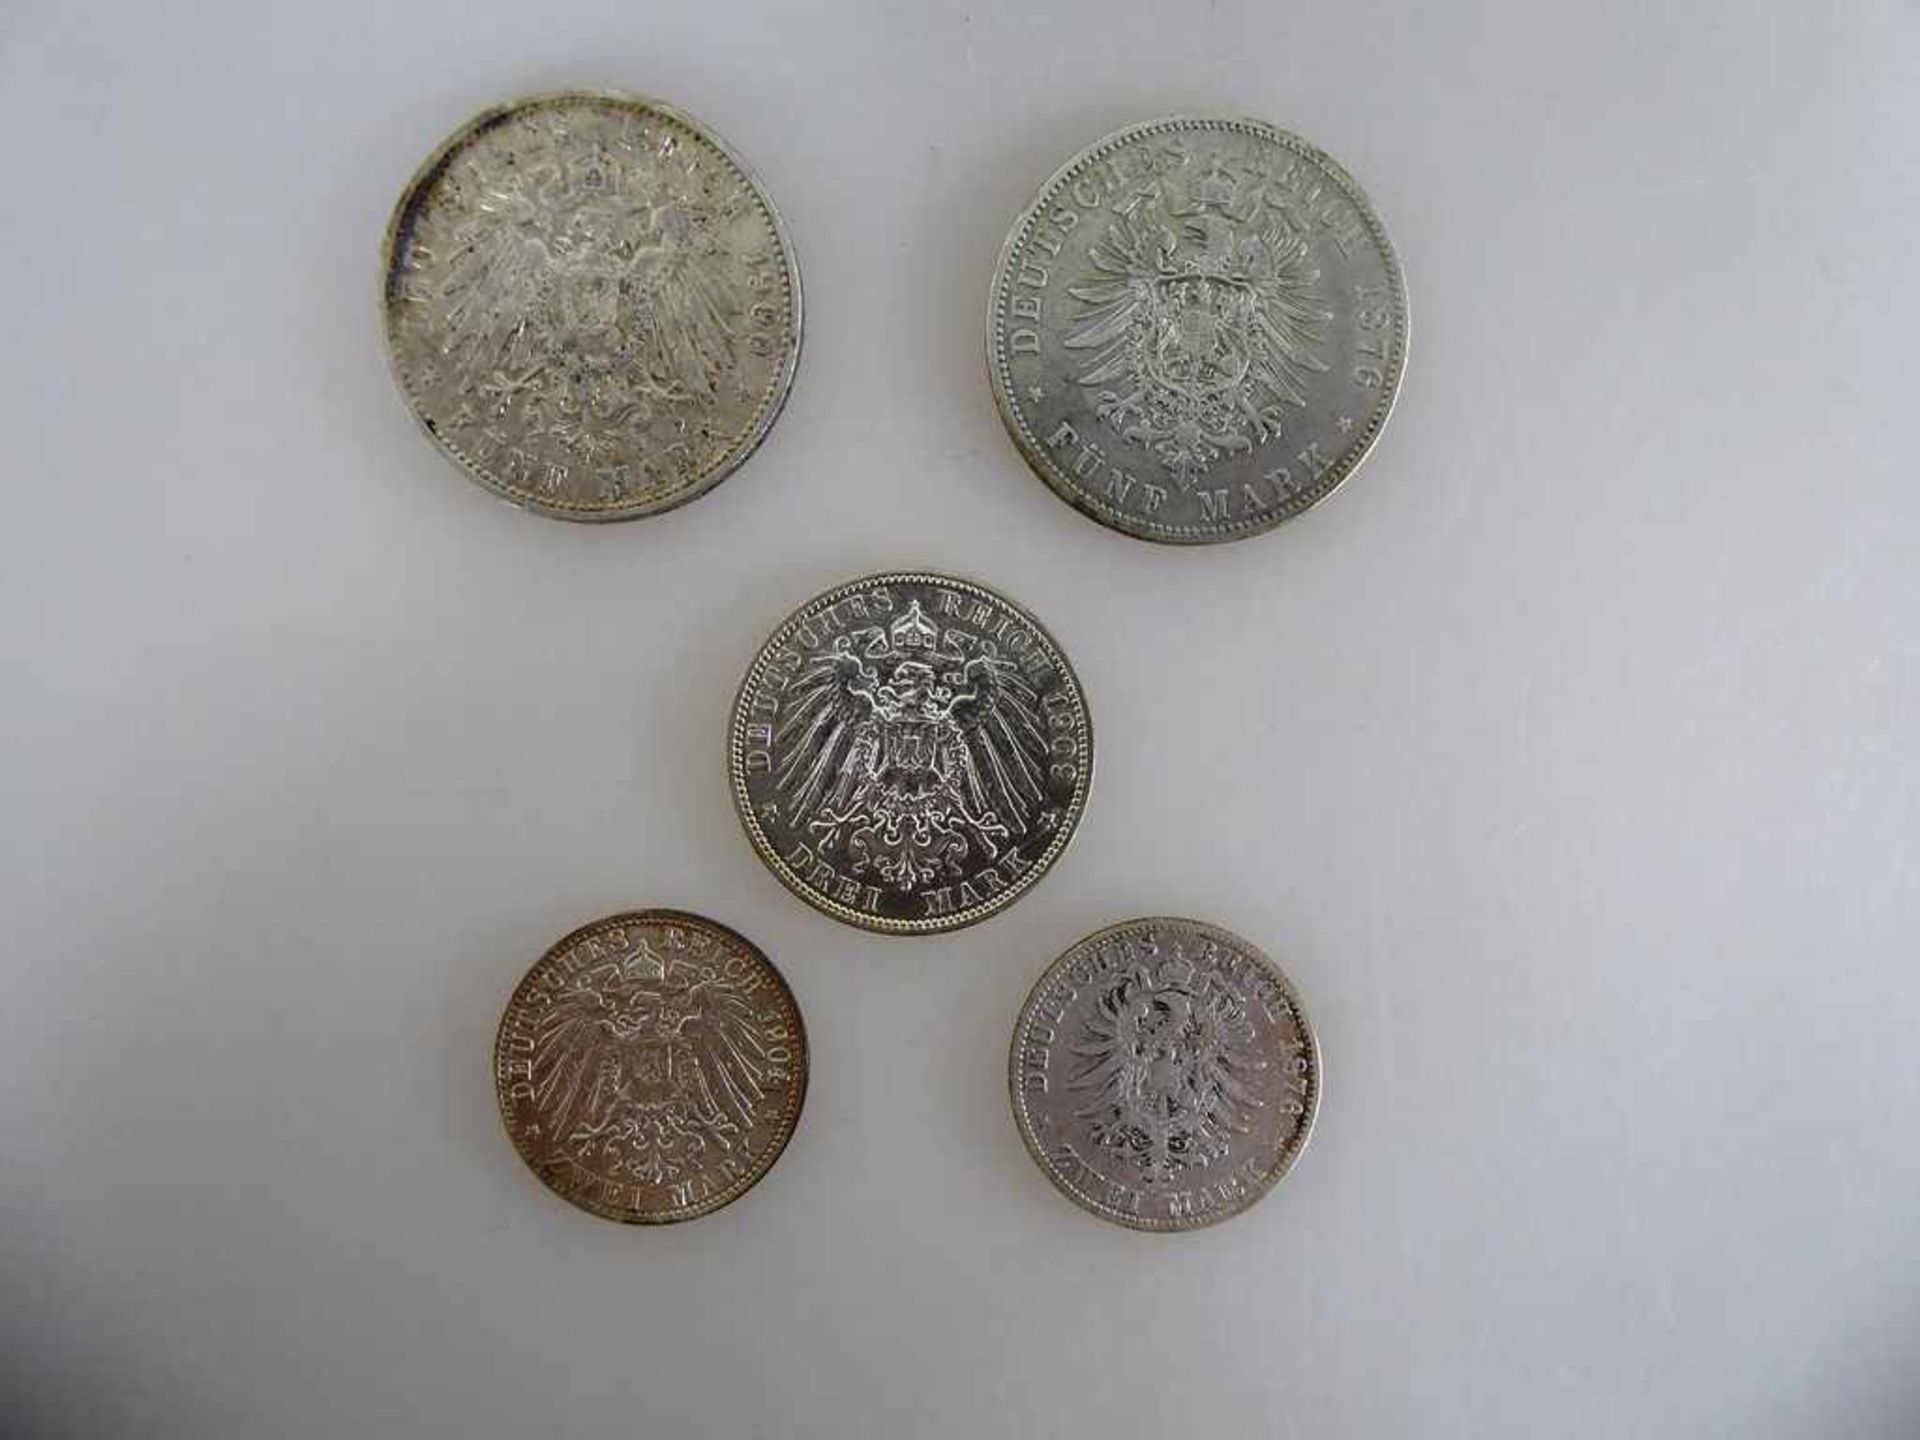 Kaiserreich - Freie Hansestadt Hamburg, 5 Silbermünzen, 2 Mark 1876 s/ss Jaeger 61, 5 Mark 1876 s/ss - Bild 2 aus 2